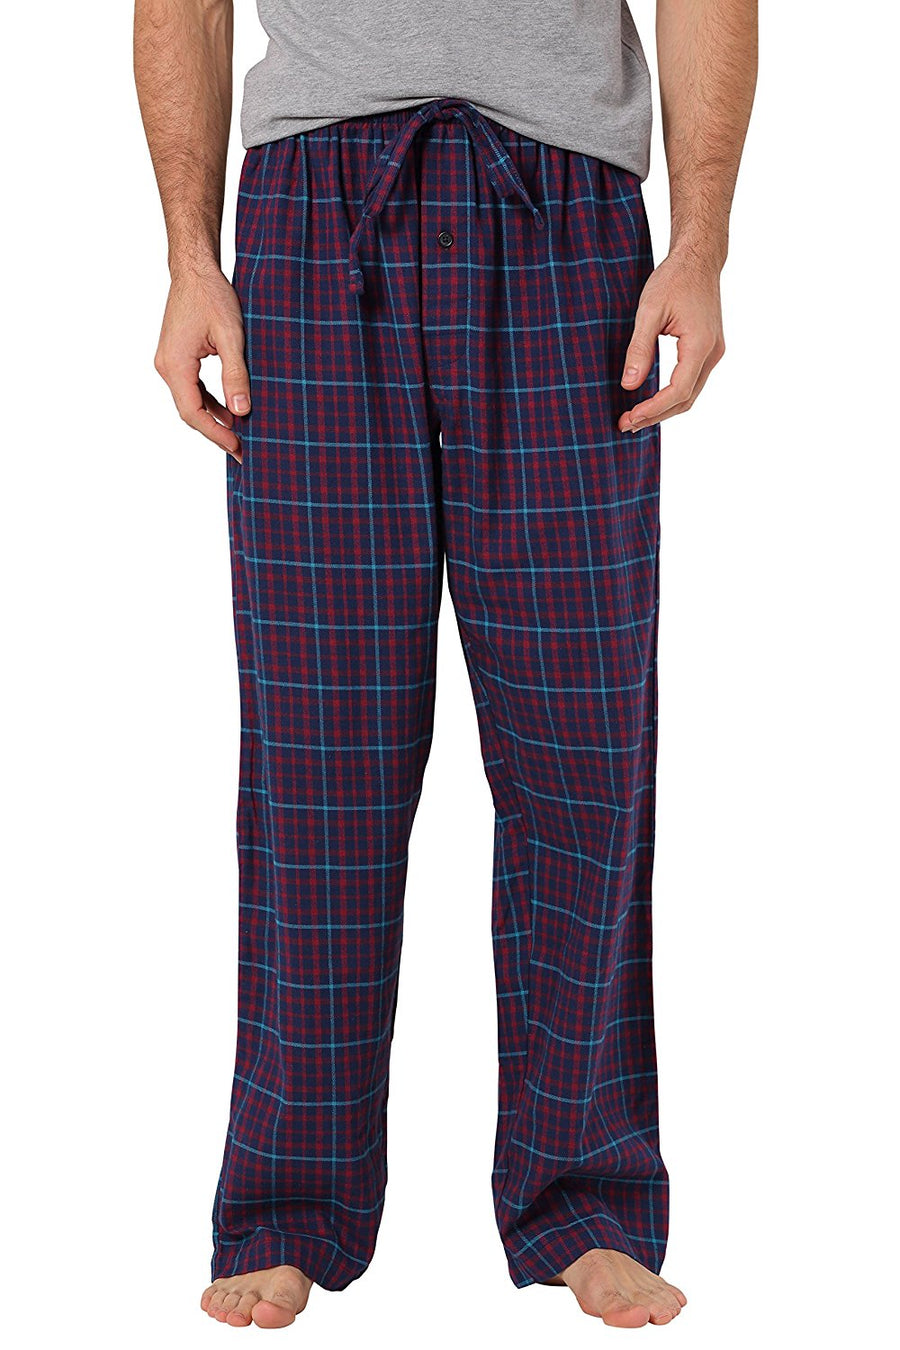 Cyz Men S 100 Cotton Super Soft Flannel Plaid Pajama Pants Cyz Collection